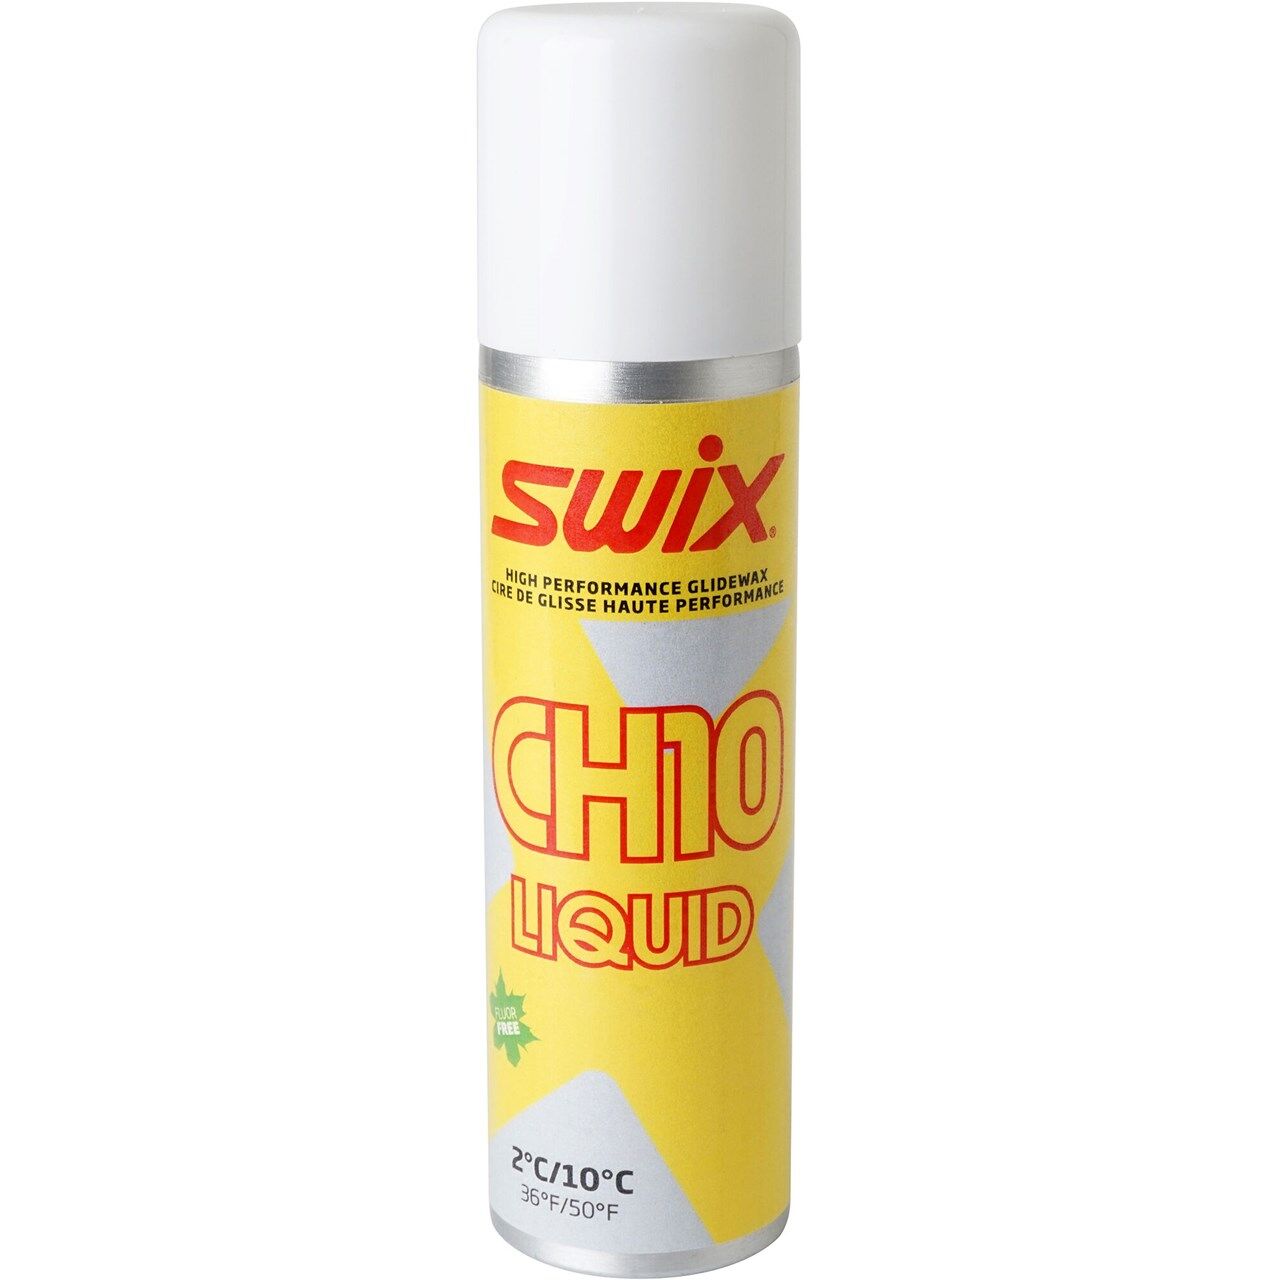 Swix CH10X Liquid 2C/10C (125ml) - Fart | Hardloop